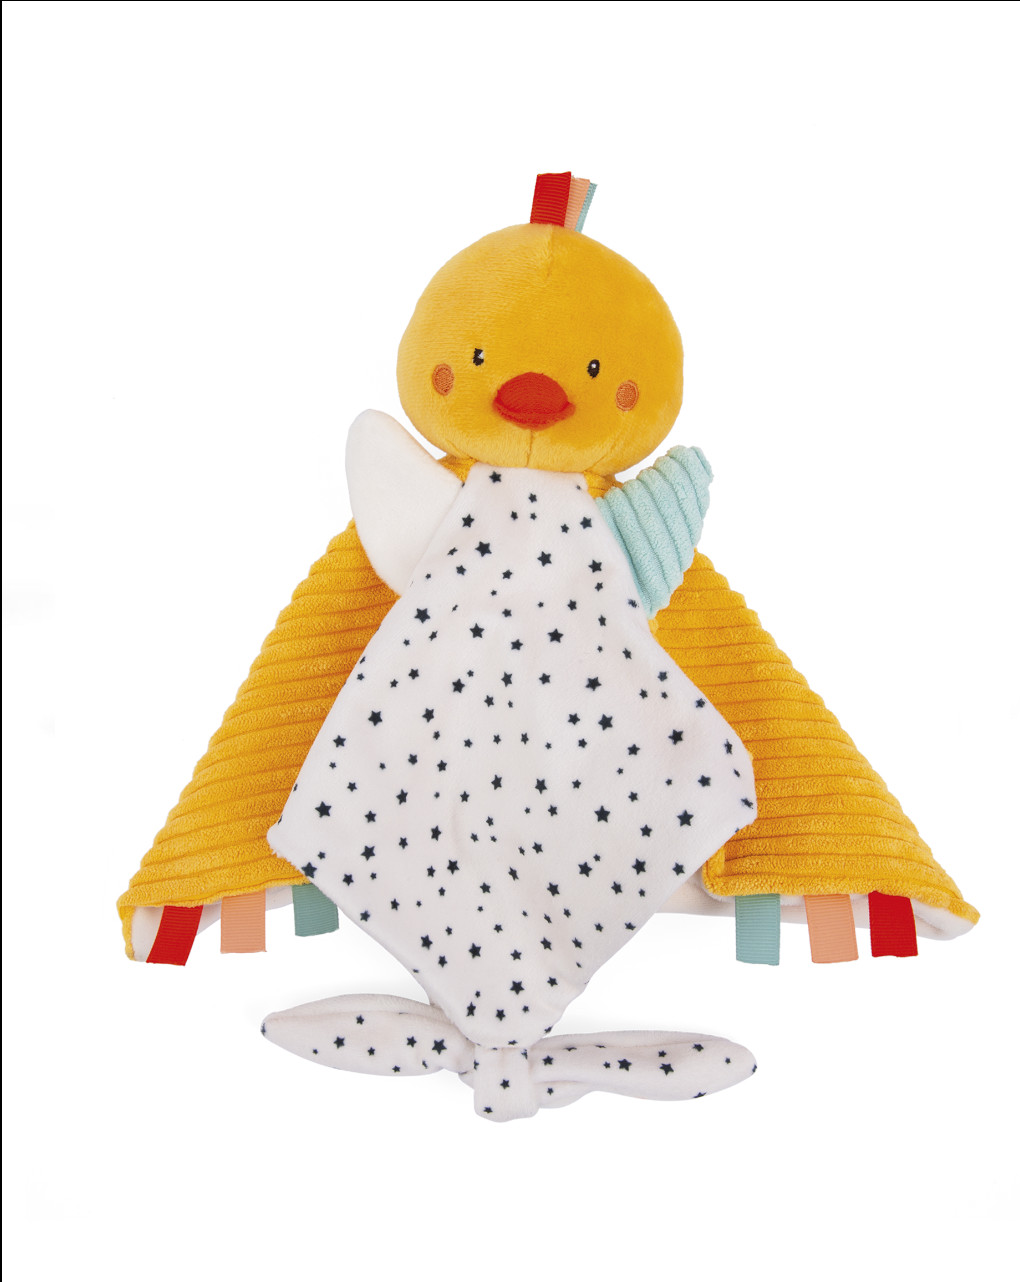 Dou dou quadrato paperella ducky - soft toys - Baby Smile